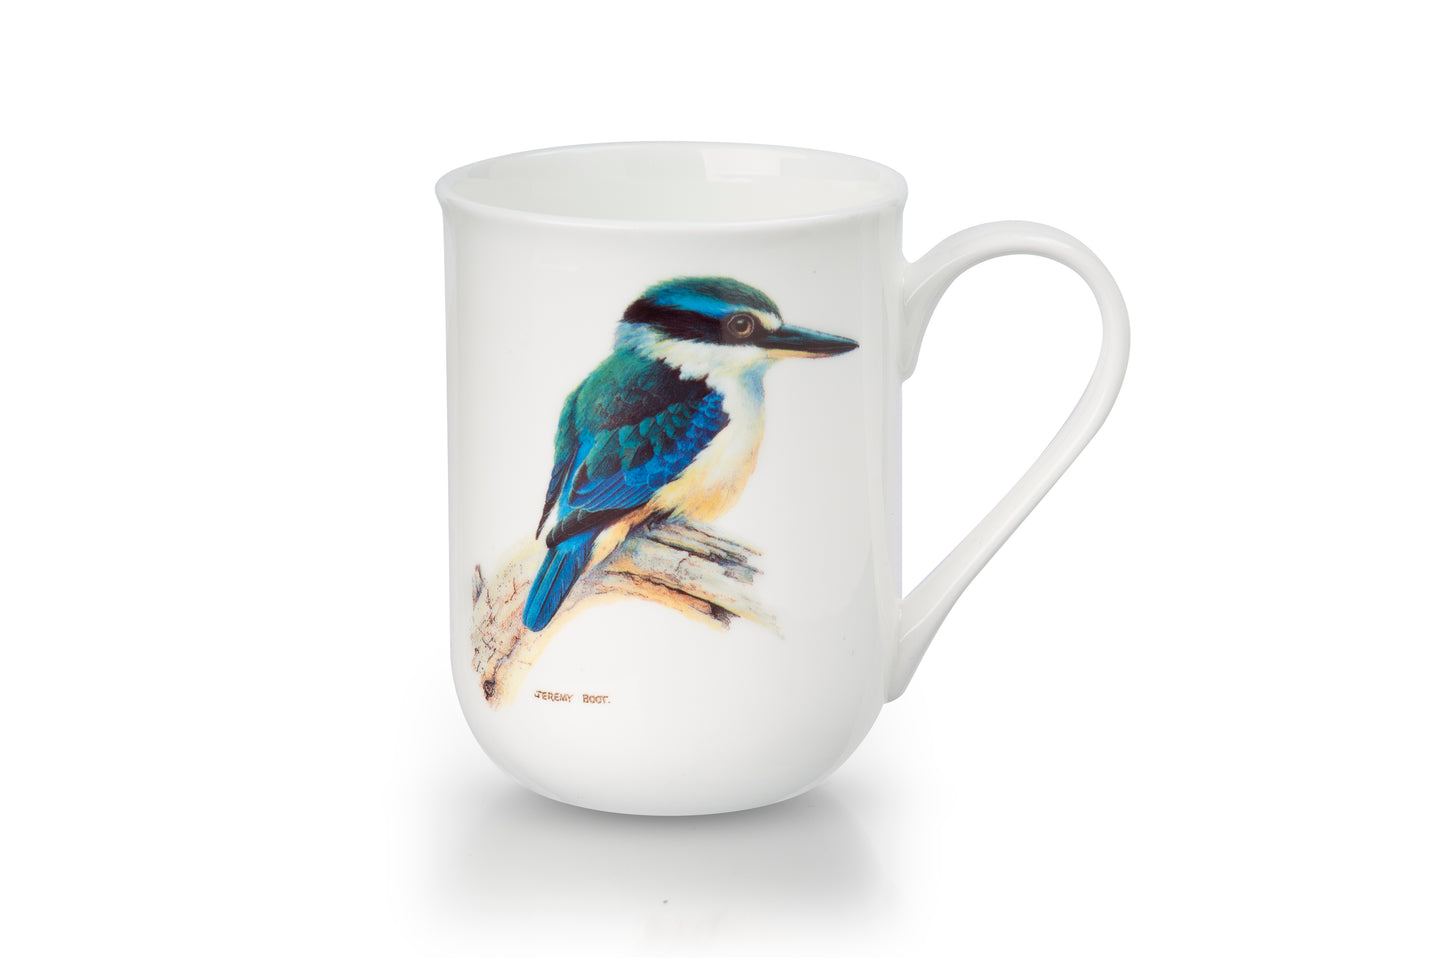 Fine Bone China Cups - Sacred Kingfisher